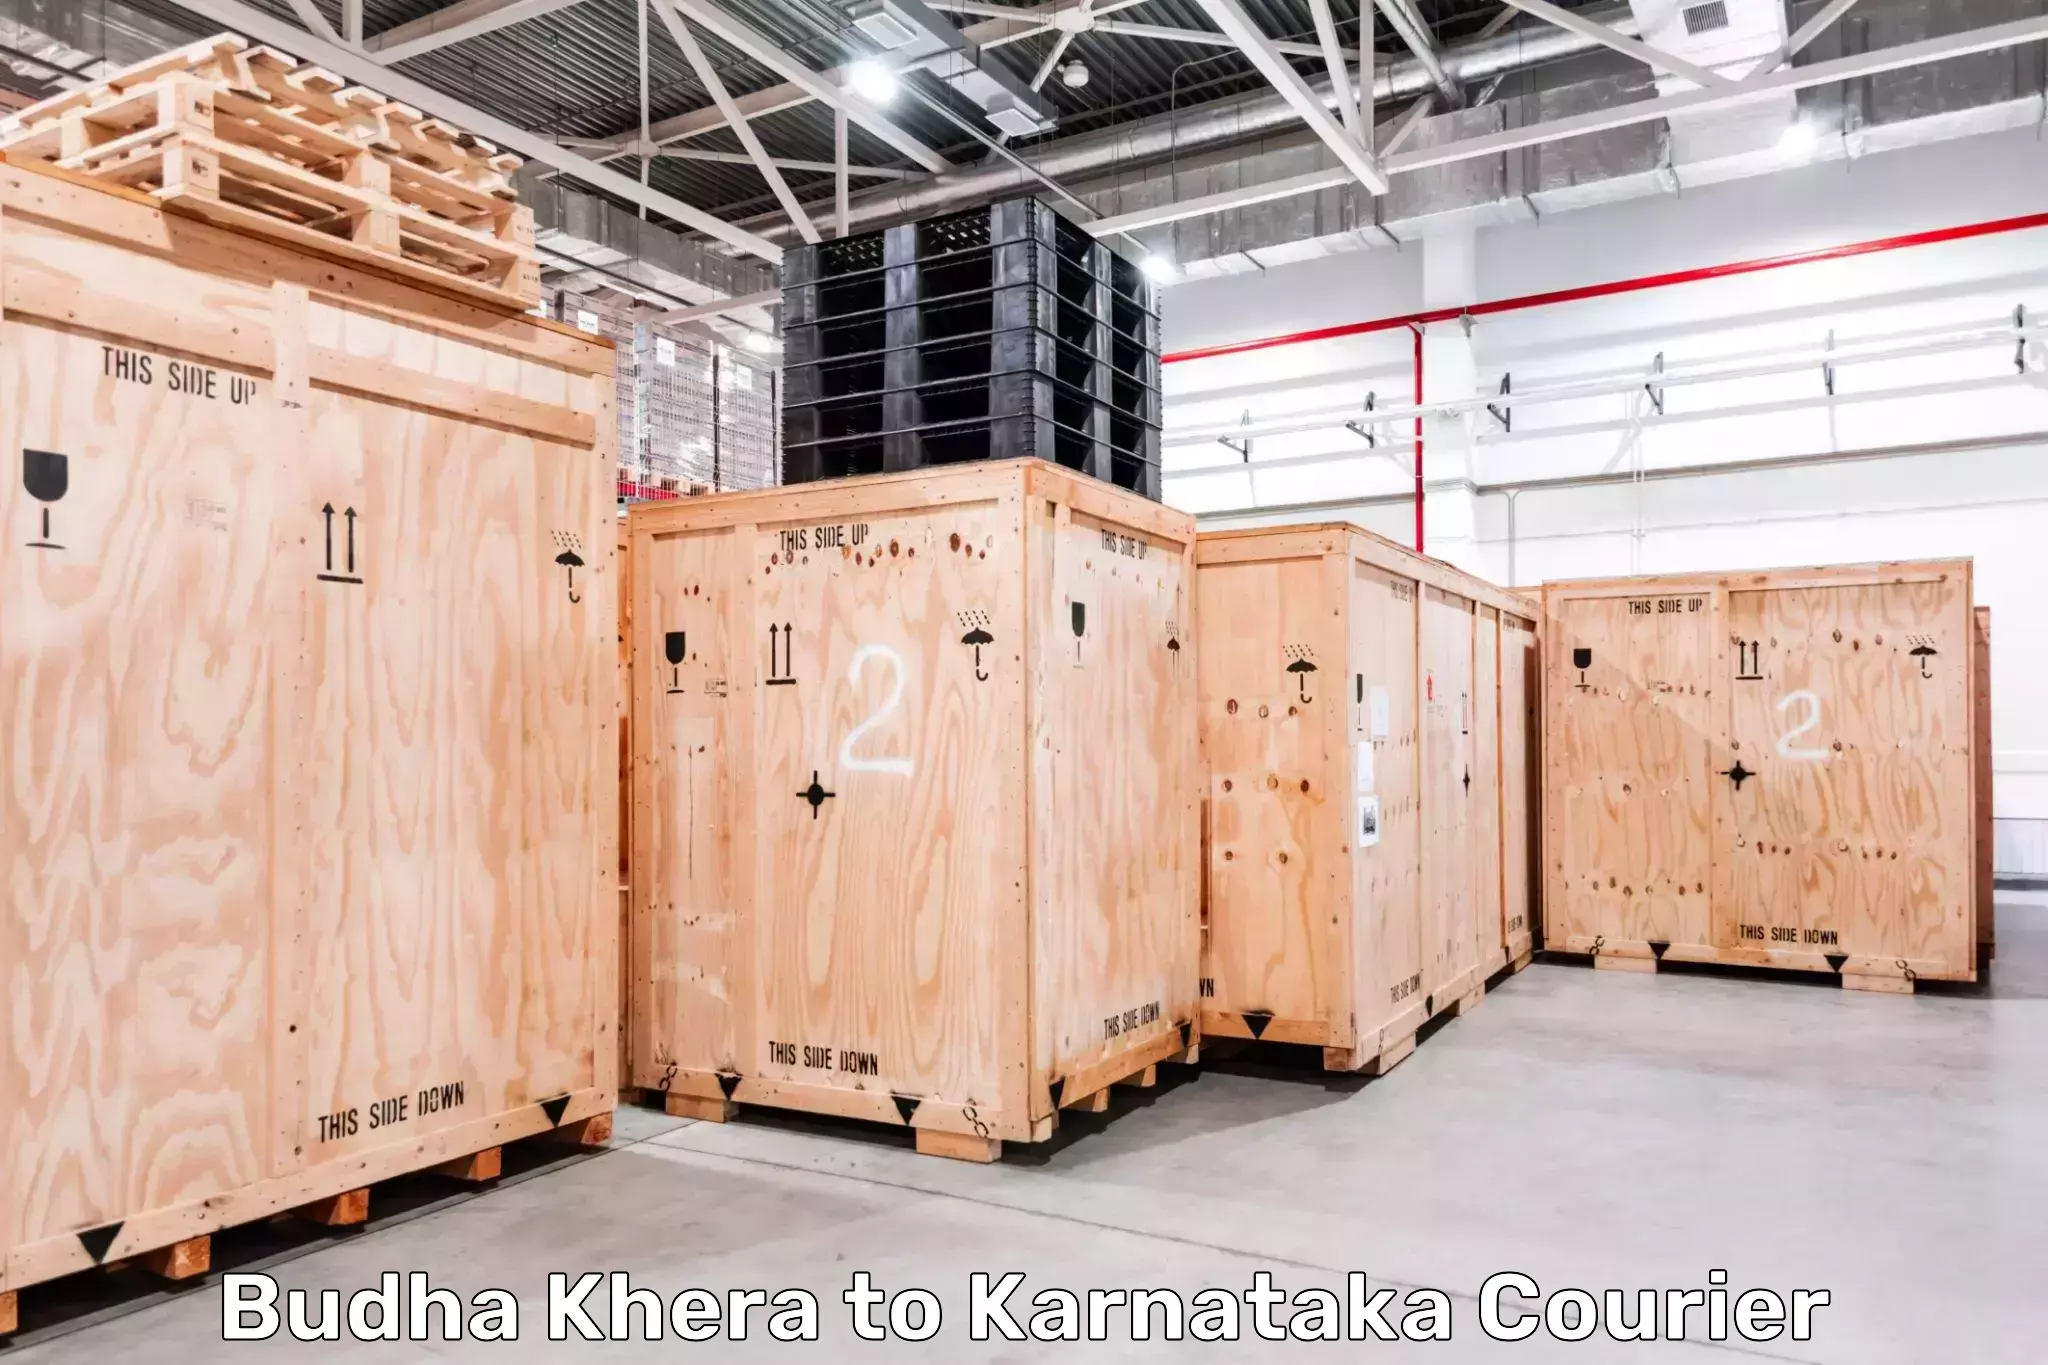 Customer-centric shipping Budha Khera to Kulshekar